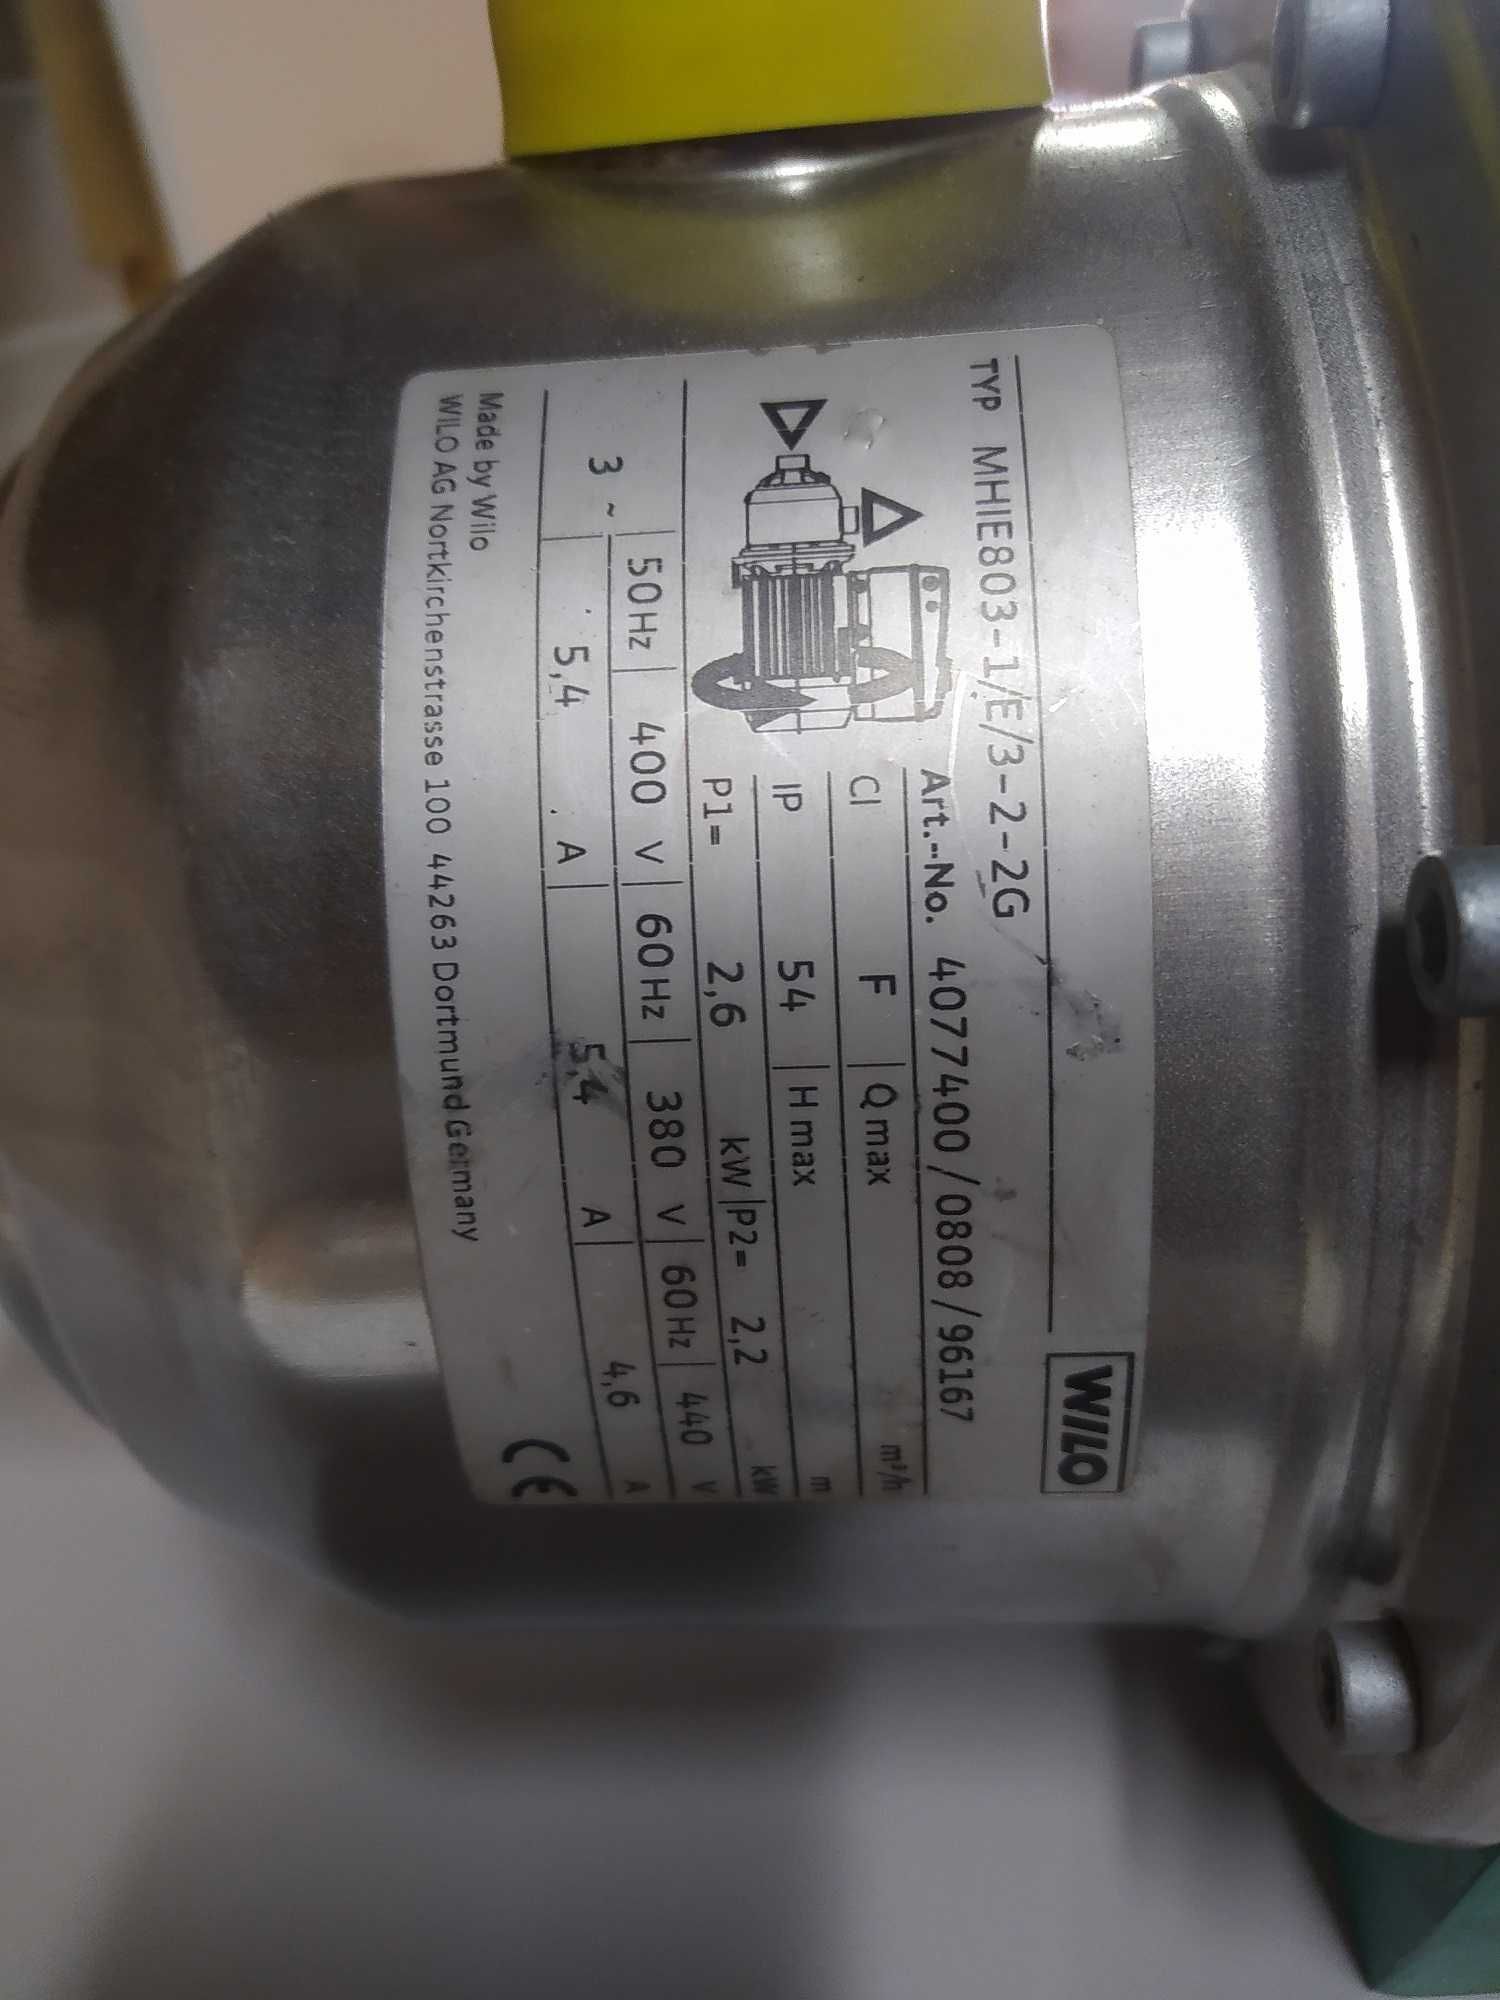 Pompa hydroforowa 2.2 Kw WILO MHIE803-1 z falownikiem